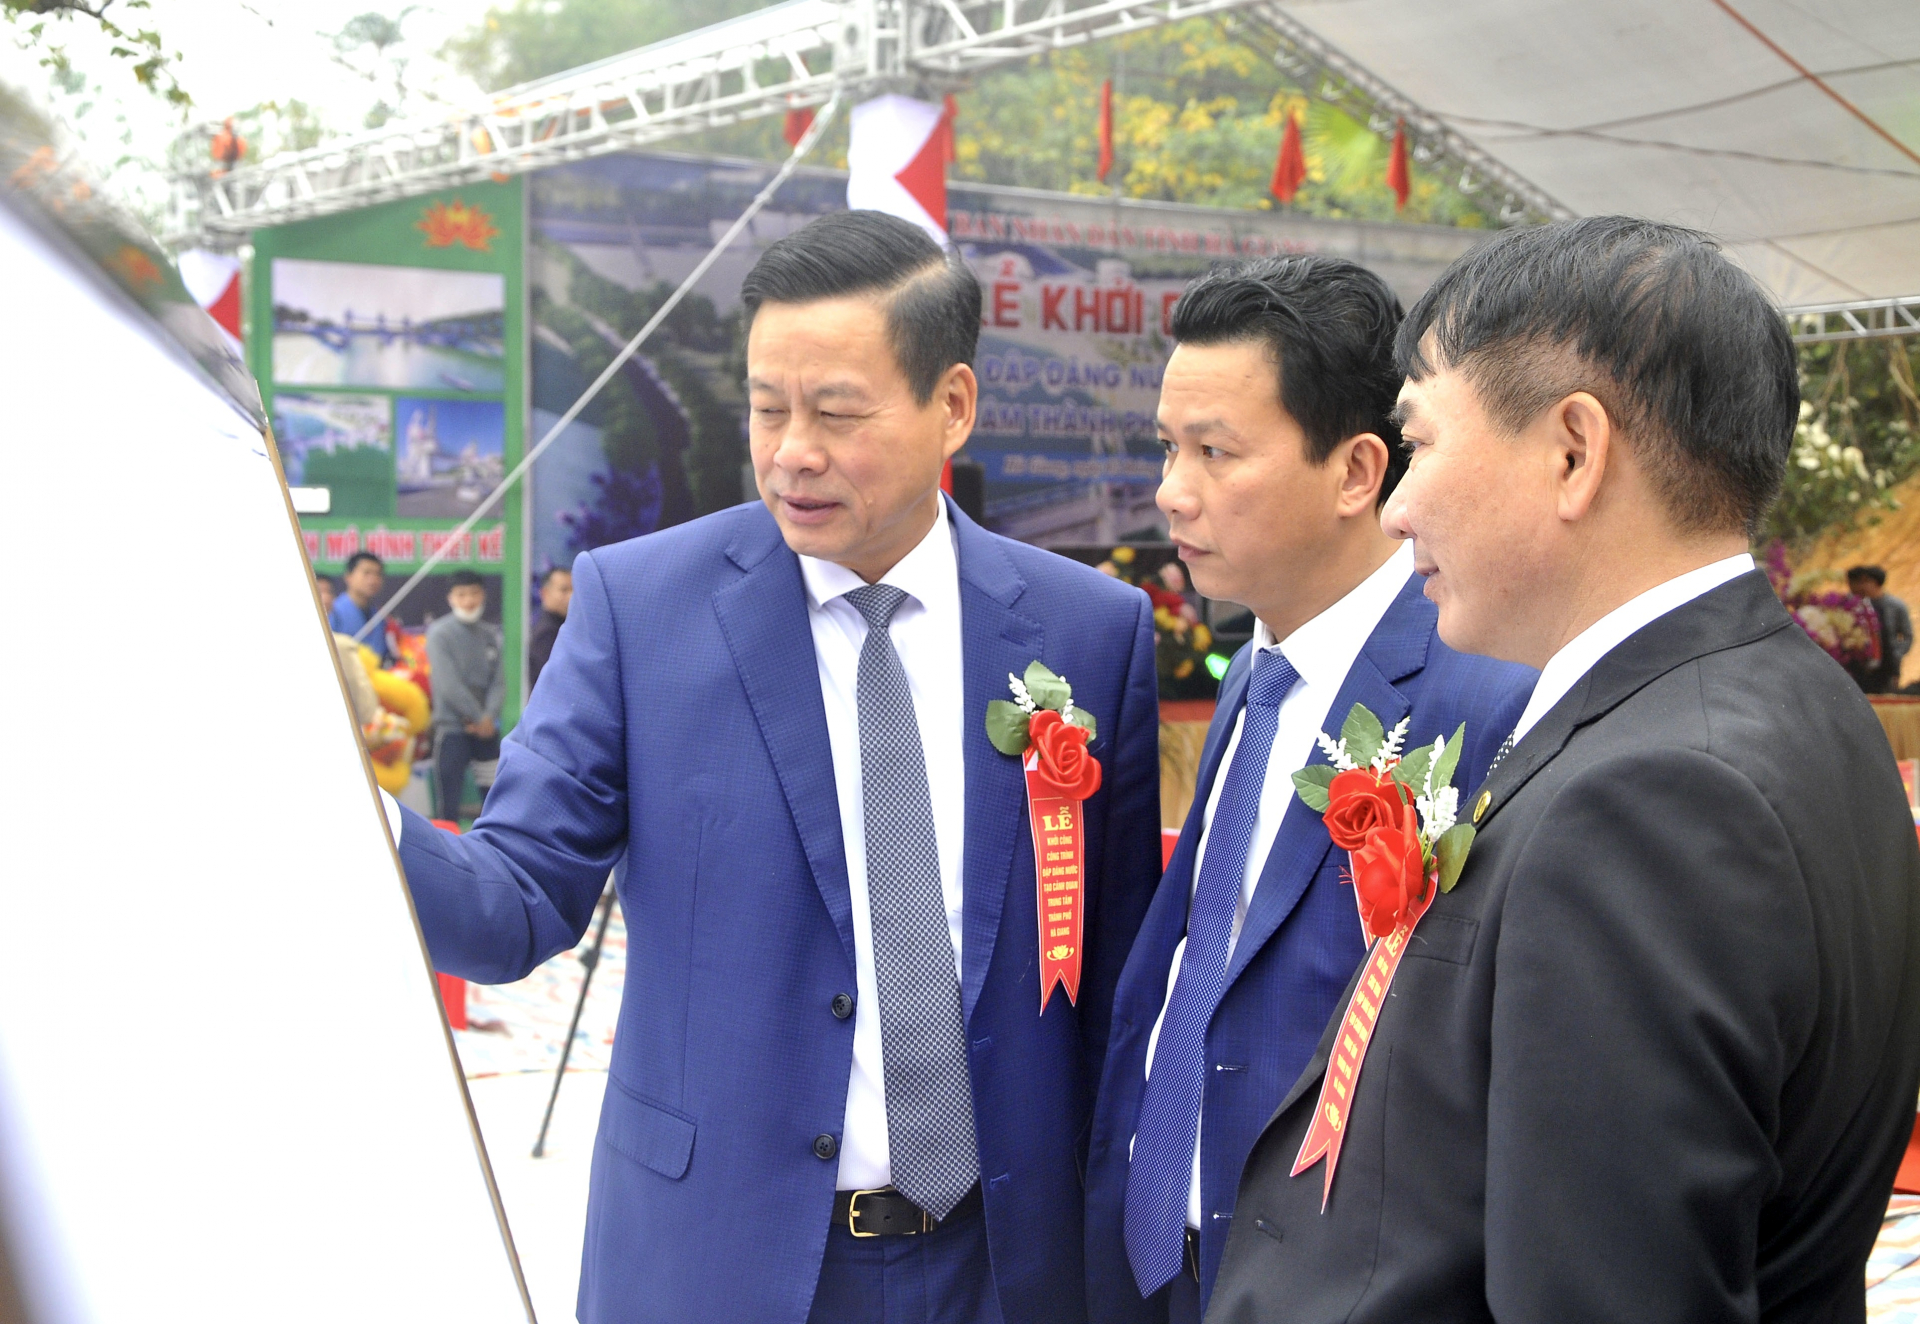 Bí thư Tỉnh ủy Đặng Quốc Khánh và Chủ tịch UBND tỉnh Nguyễn Văn Sơn kiểm tra bản vẽ công trình.